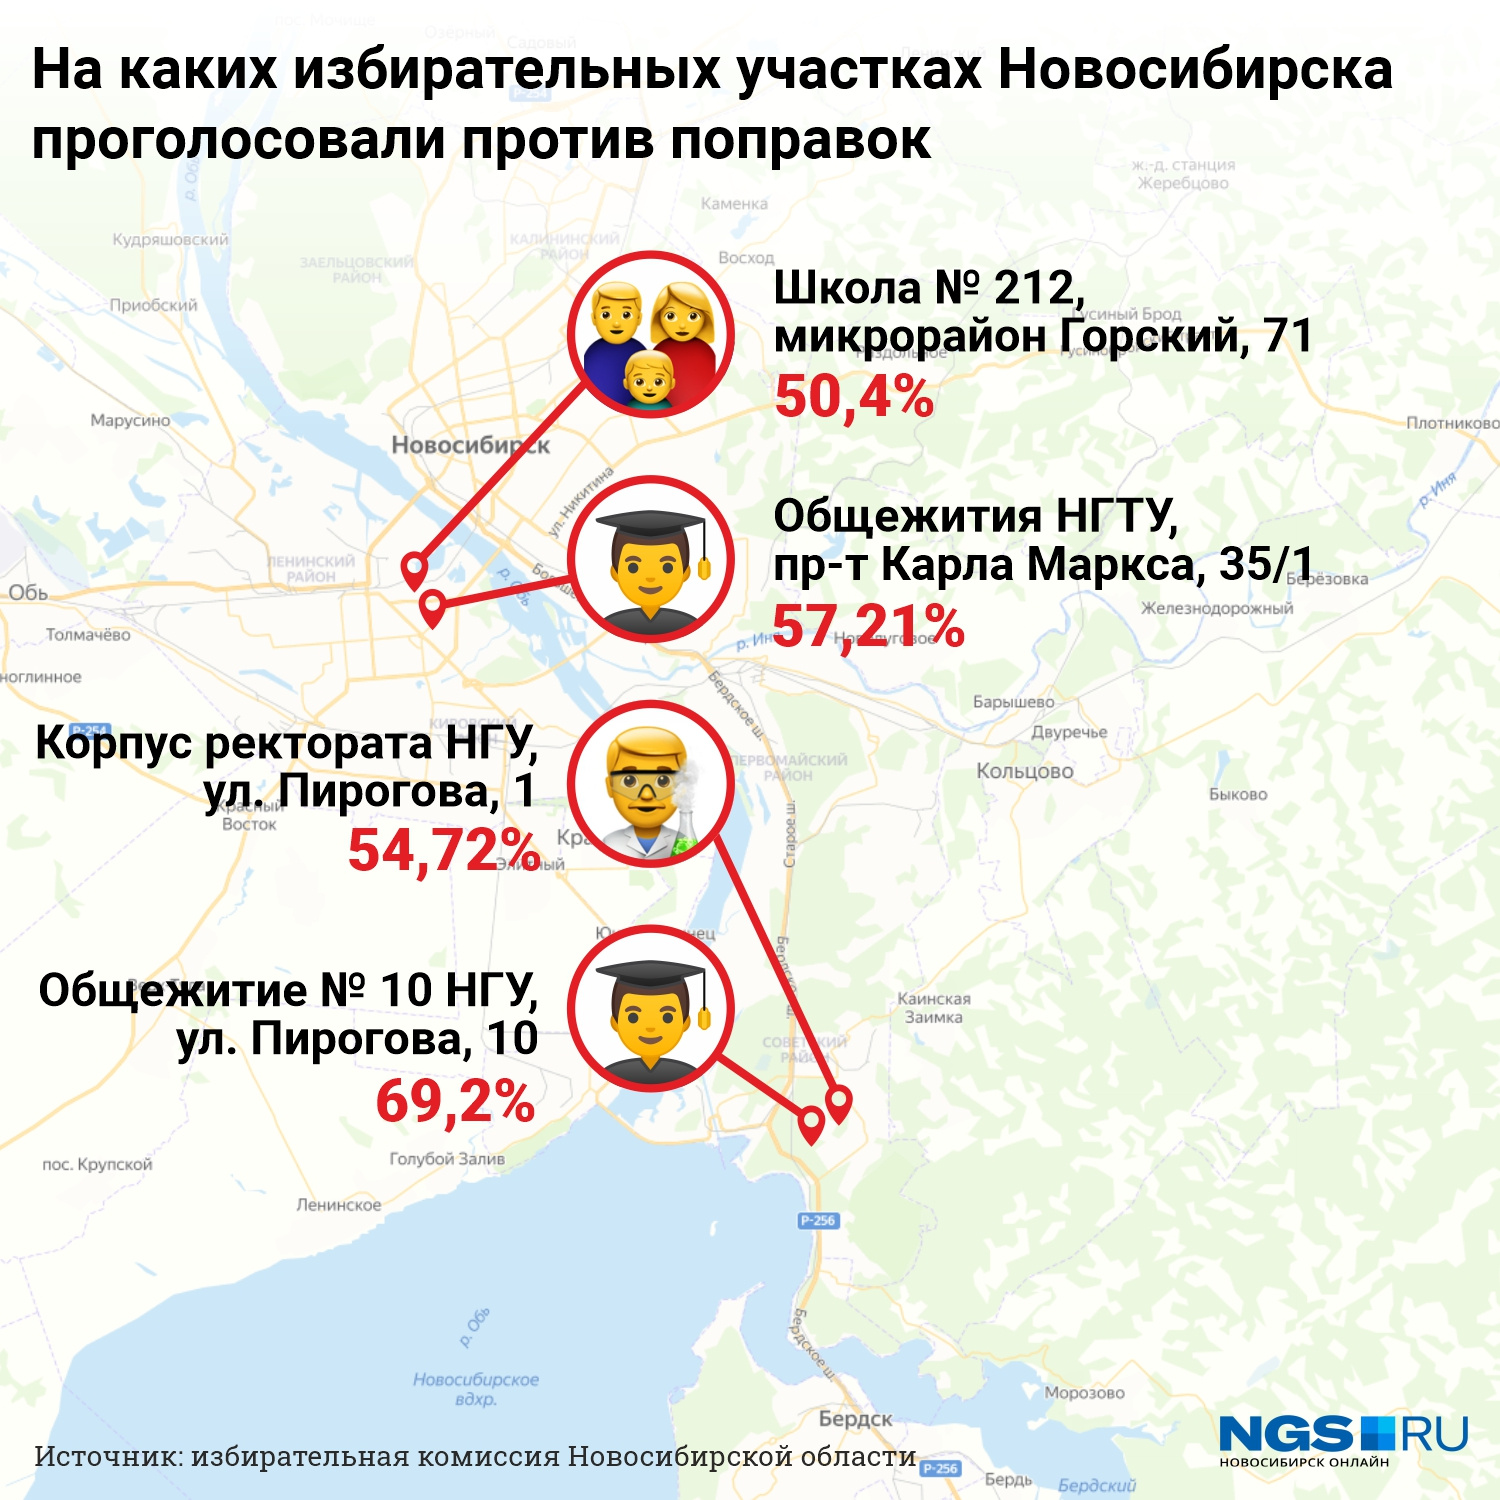 Инфографика Орел. Где можно проголосовать в новосибирске